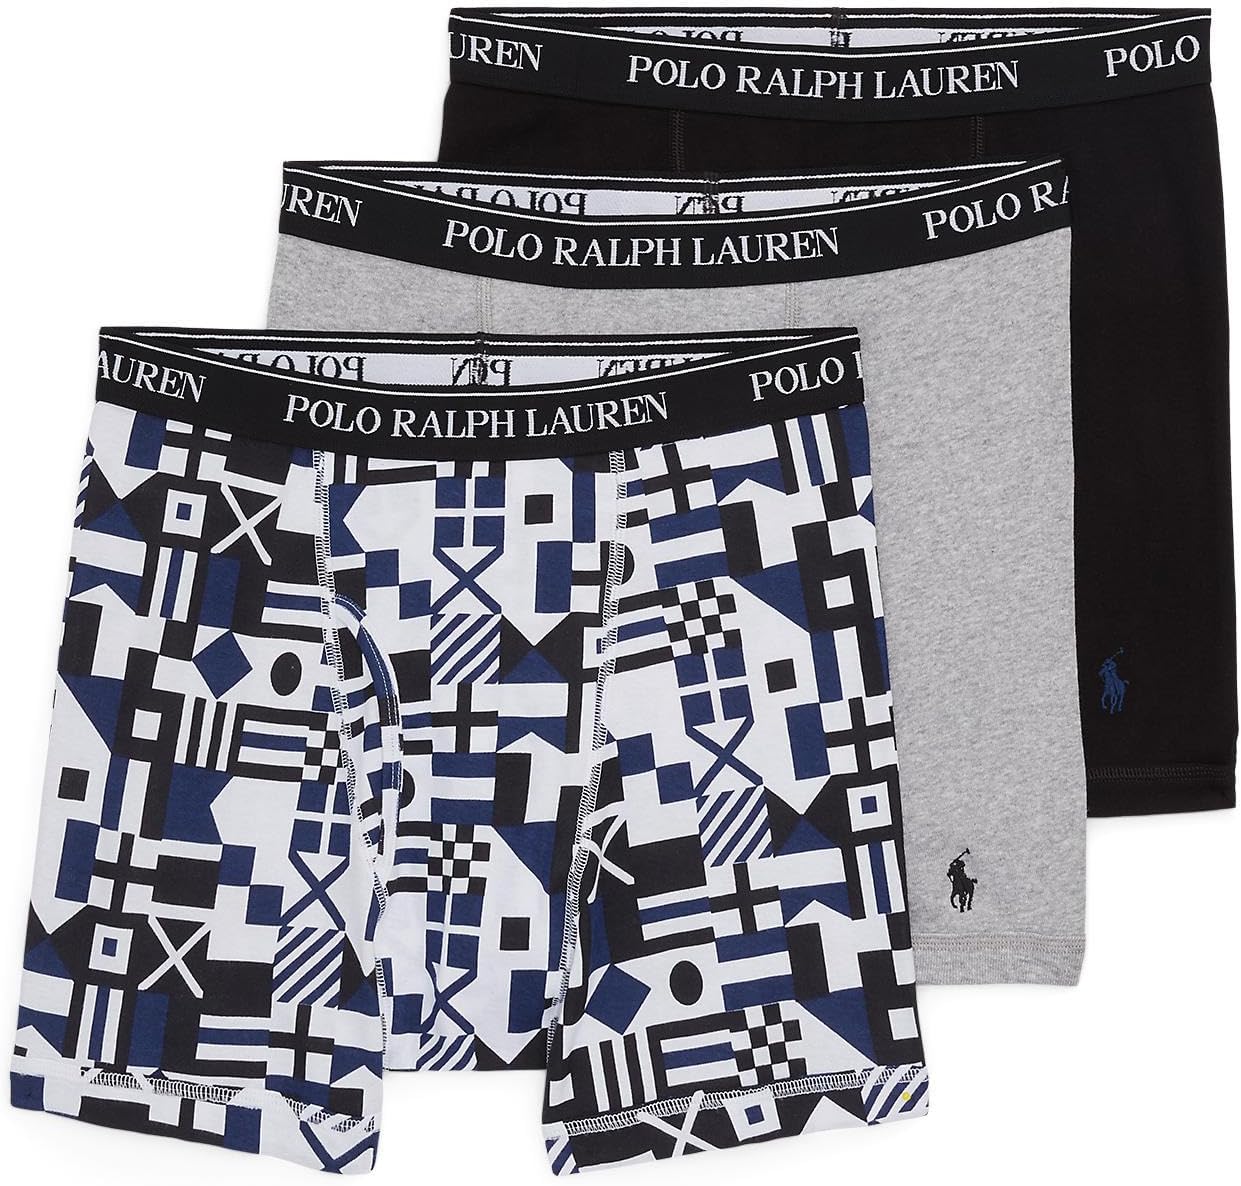 Комплект из 3 трусов-боксеров классического кроя Polo Ralph Lauren, цвет Signal Flags Print/Andover Heather/Polo Black